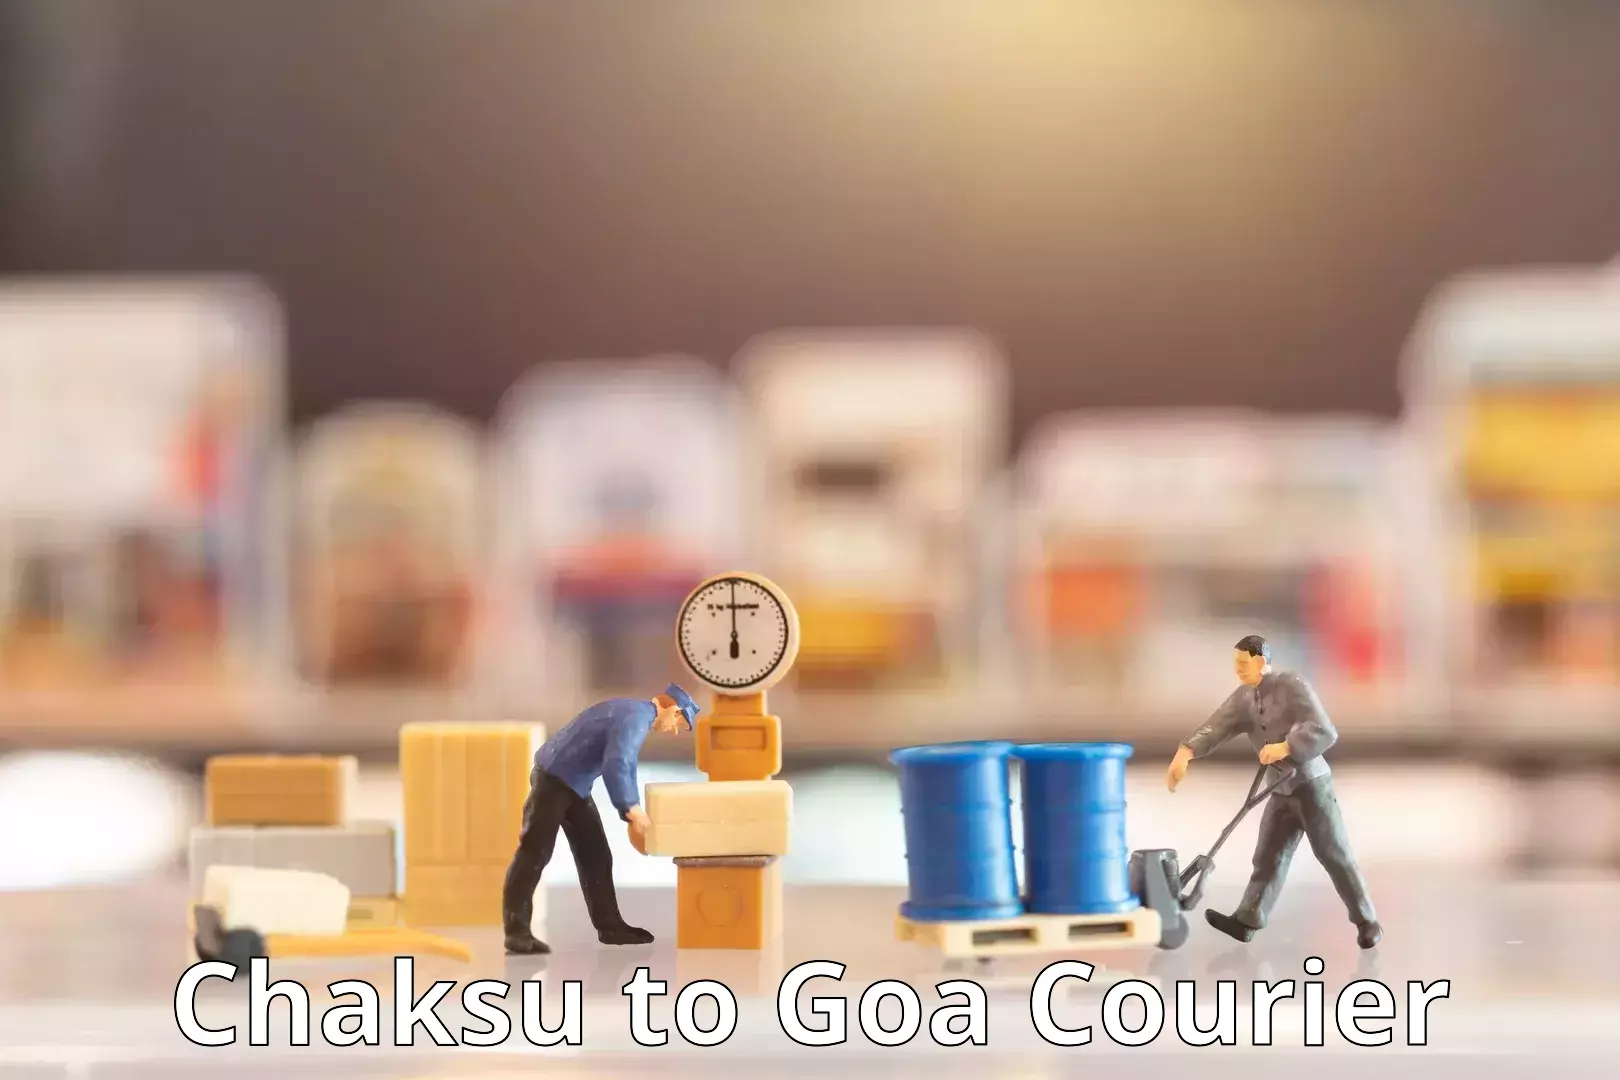 Global courier networks Chaksu to Goa